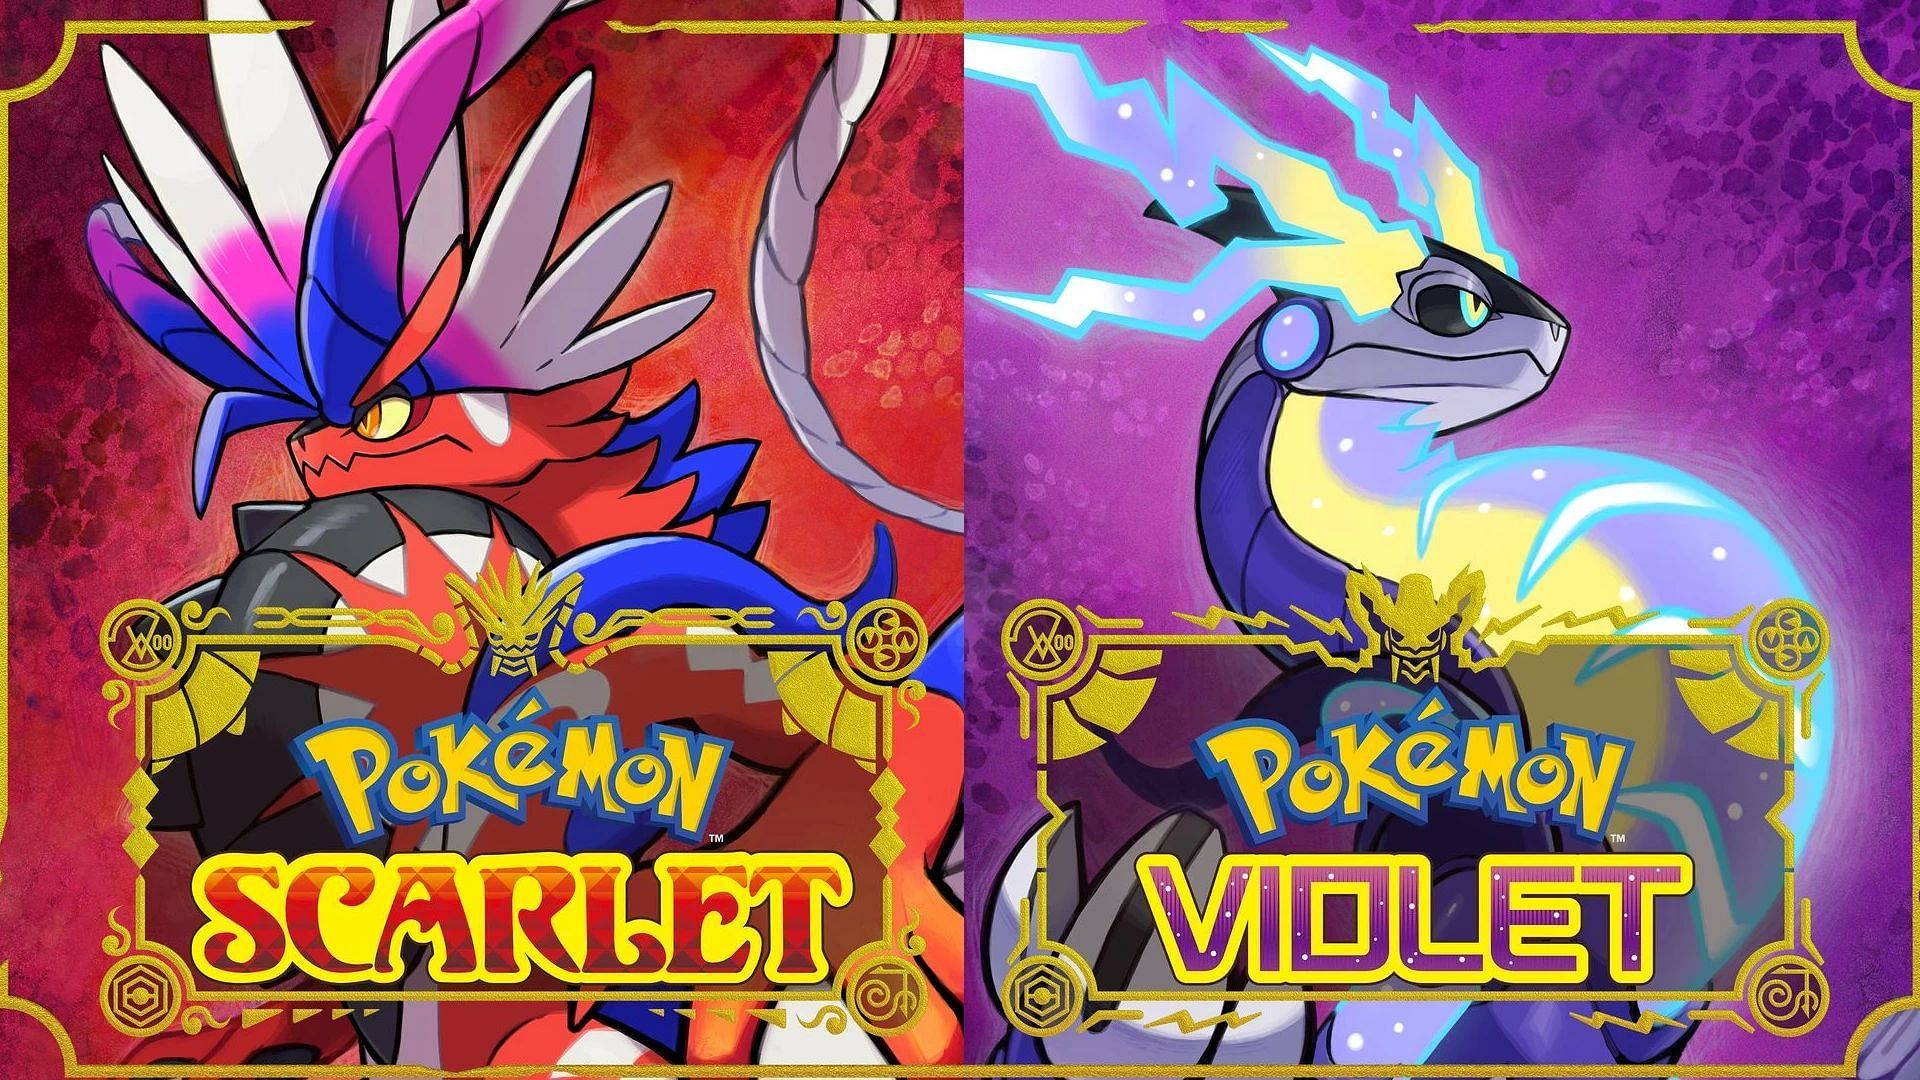 Pokémon Scarlet/Violet Leak Reveals All Returning Pocket Monsters